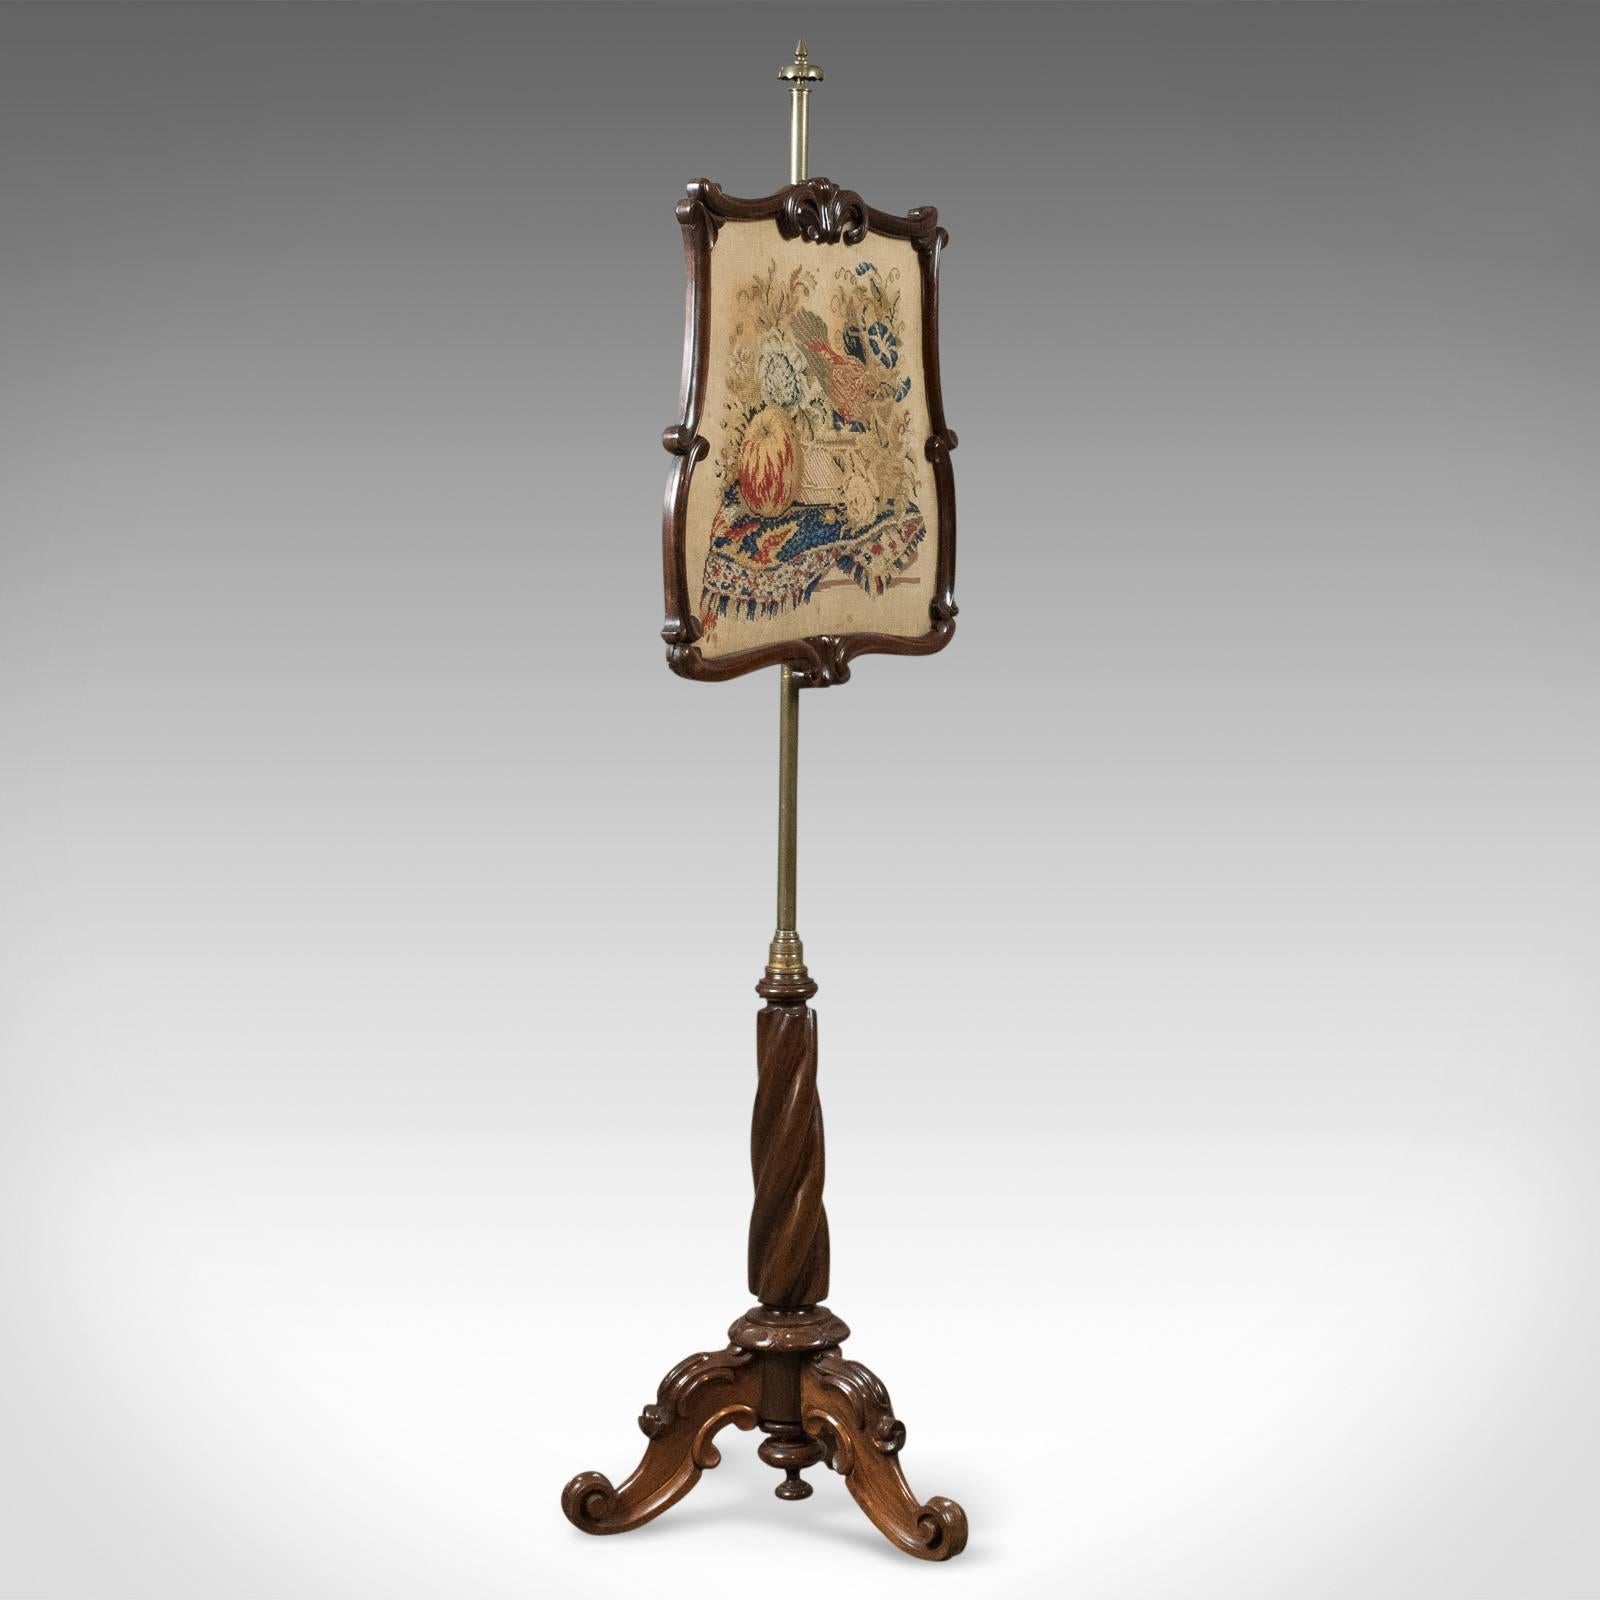 Dies ist eine antike Stange Bildschirm, frühen viktorianischen Feuer Bildschirm, ca. 1840.

Errichtet auf einem robusten Palisanderholzständer mit guter Farbe und Maserung
Ein Dreibein mit schön geschnitzten Cabriole-Beinen mit C'-Rollen,